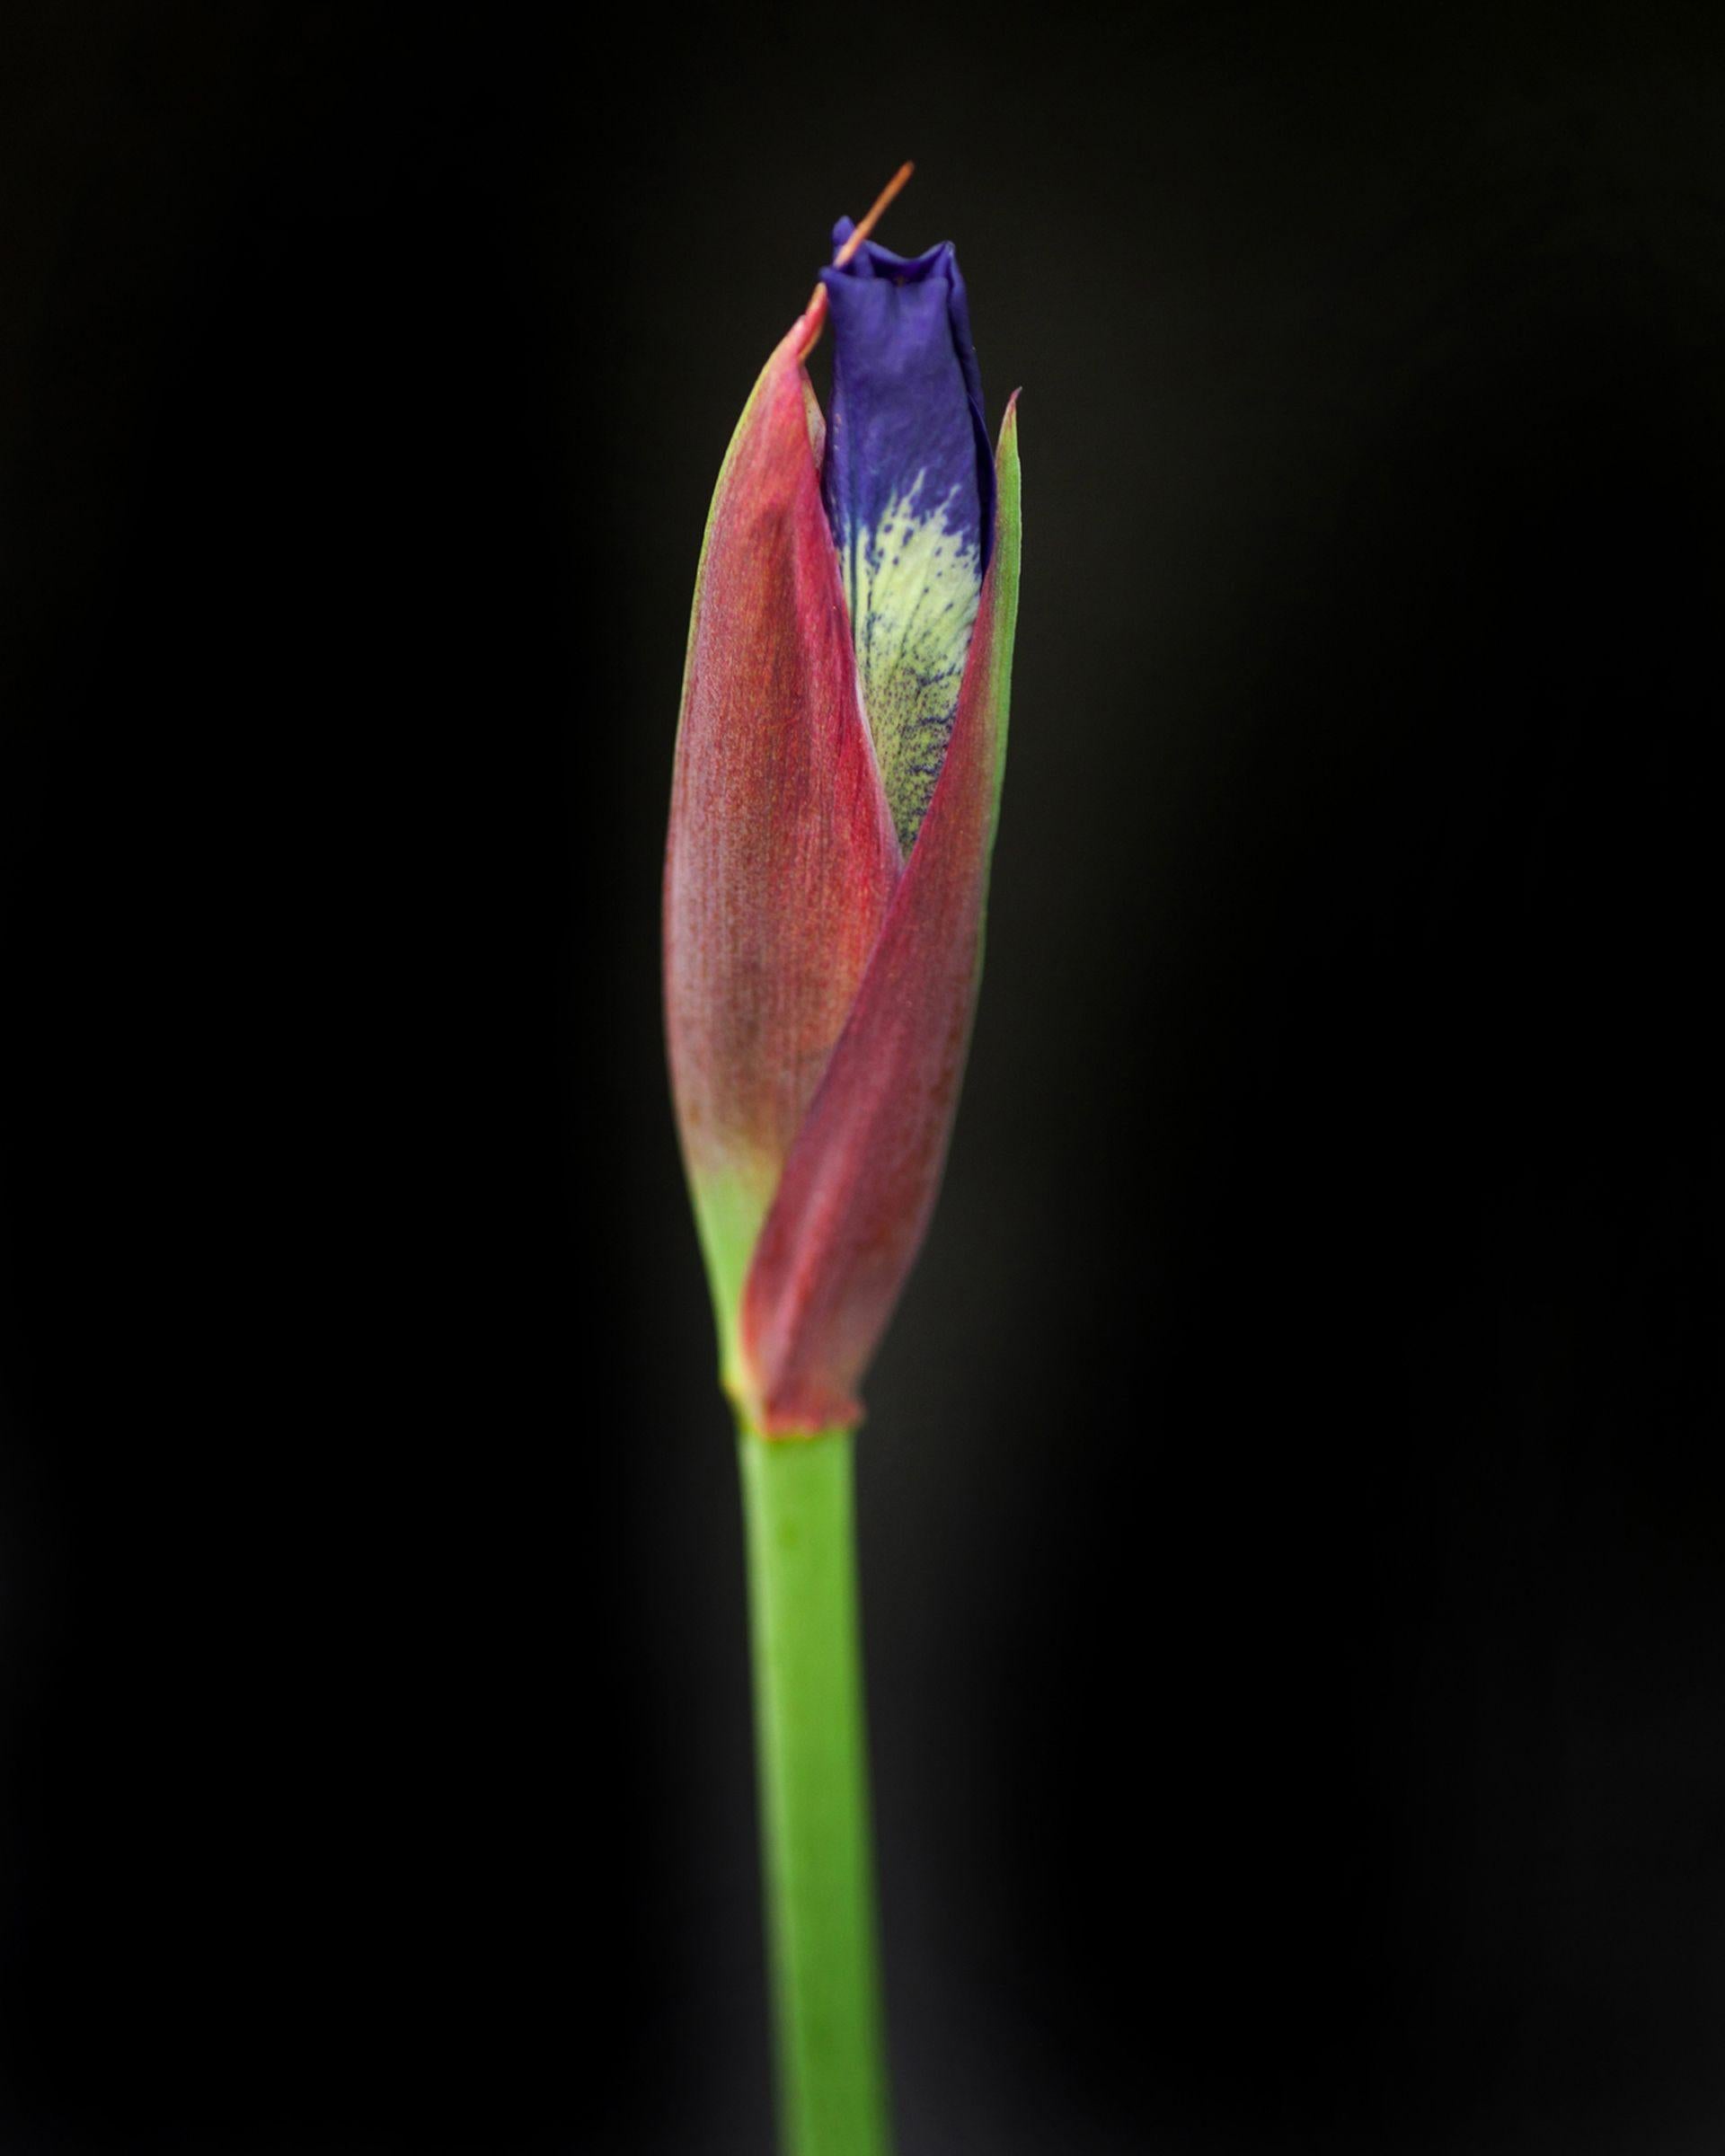 Color Photograph Michael Filonow - Botanical 48, Photographie, Jet d'encre d'art